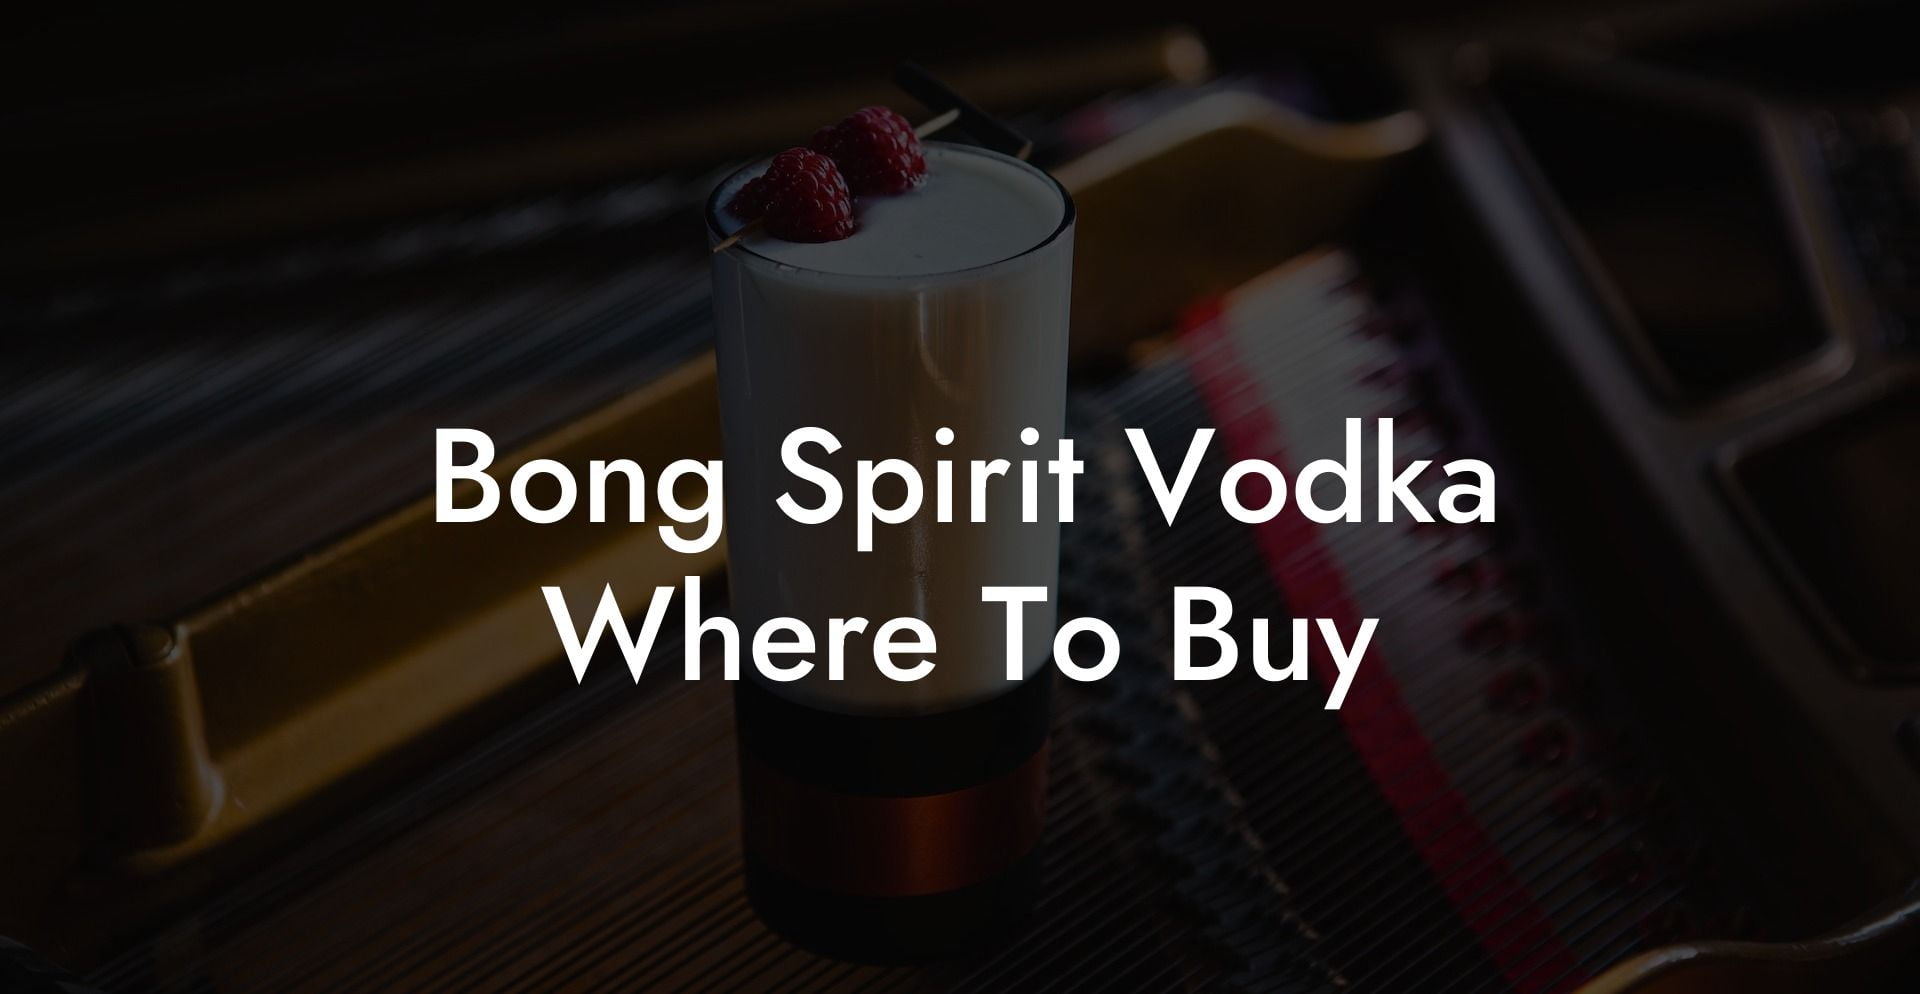 Bong Spirit Vodka Where To Buy